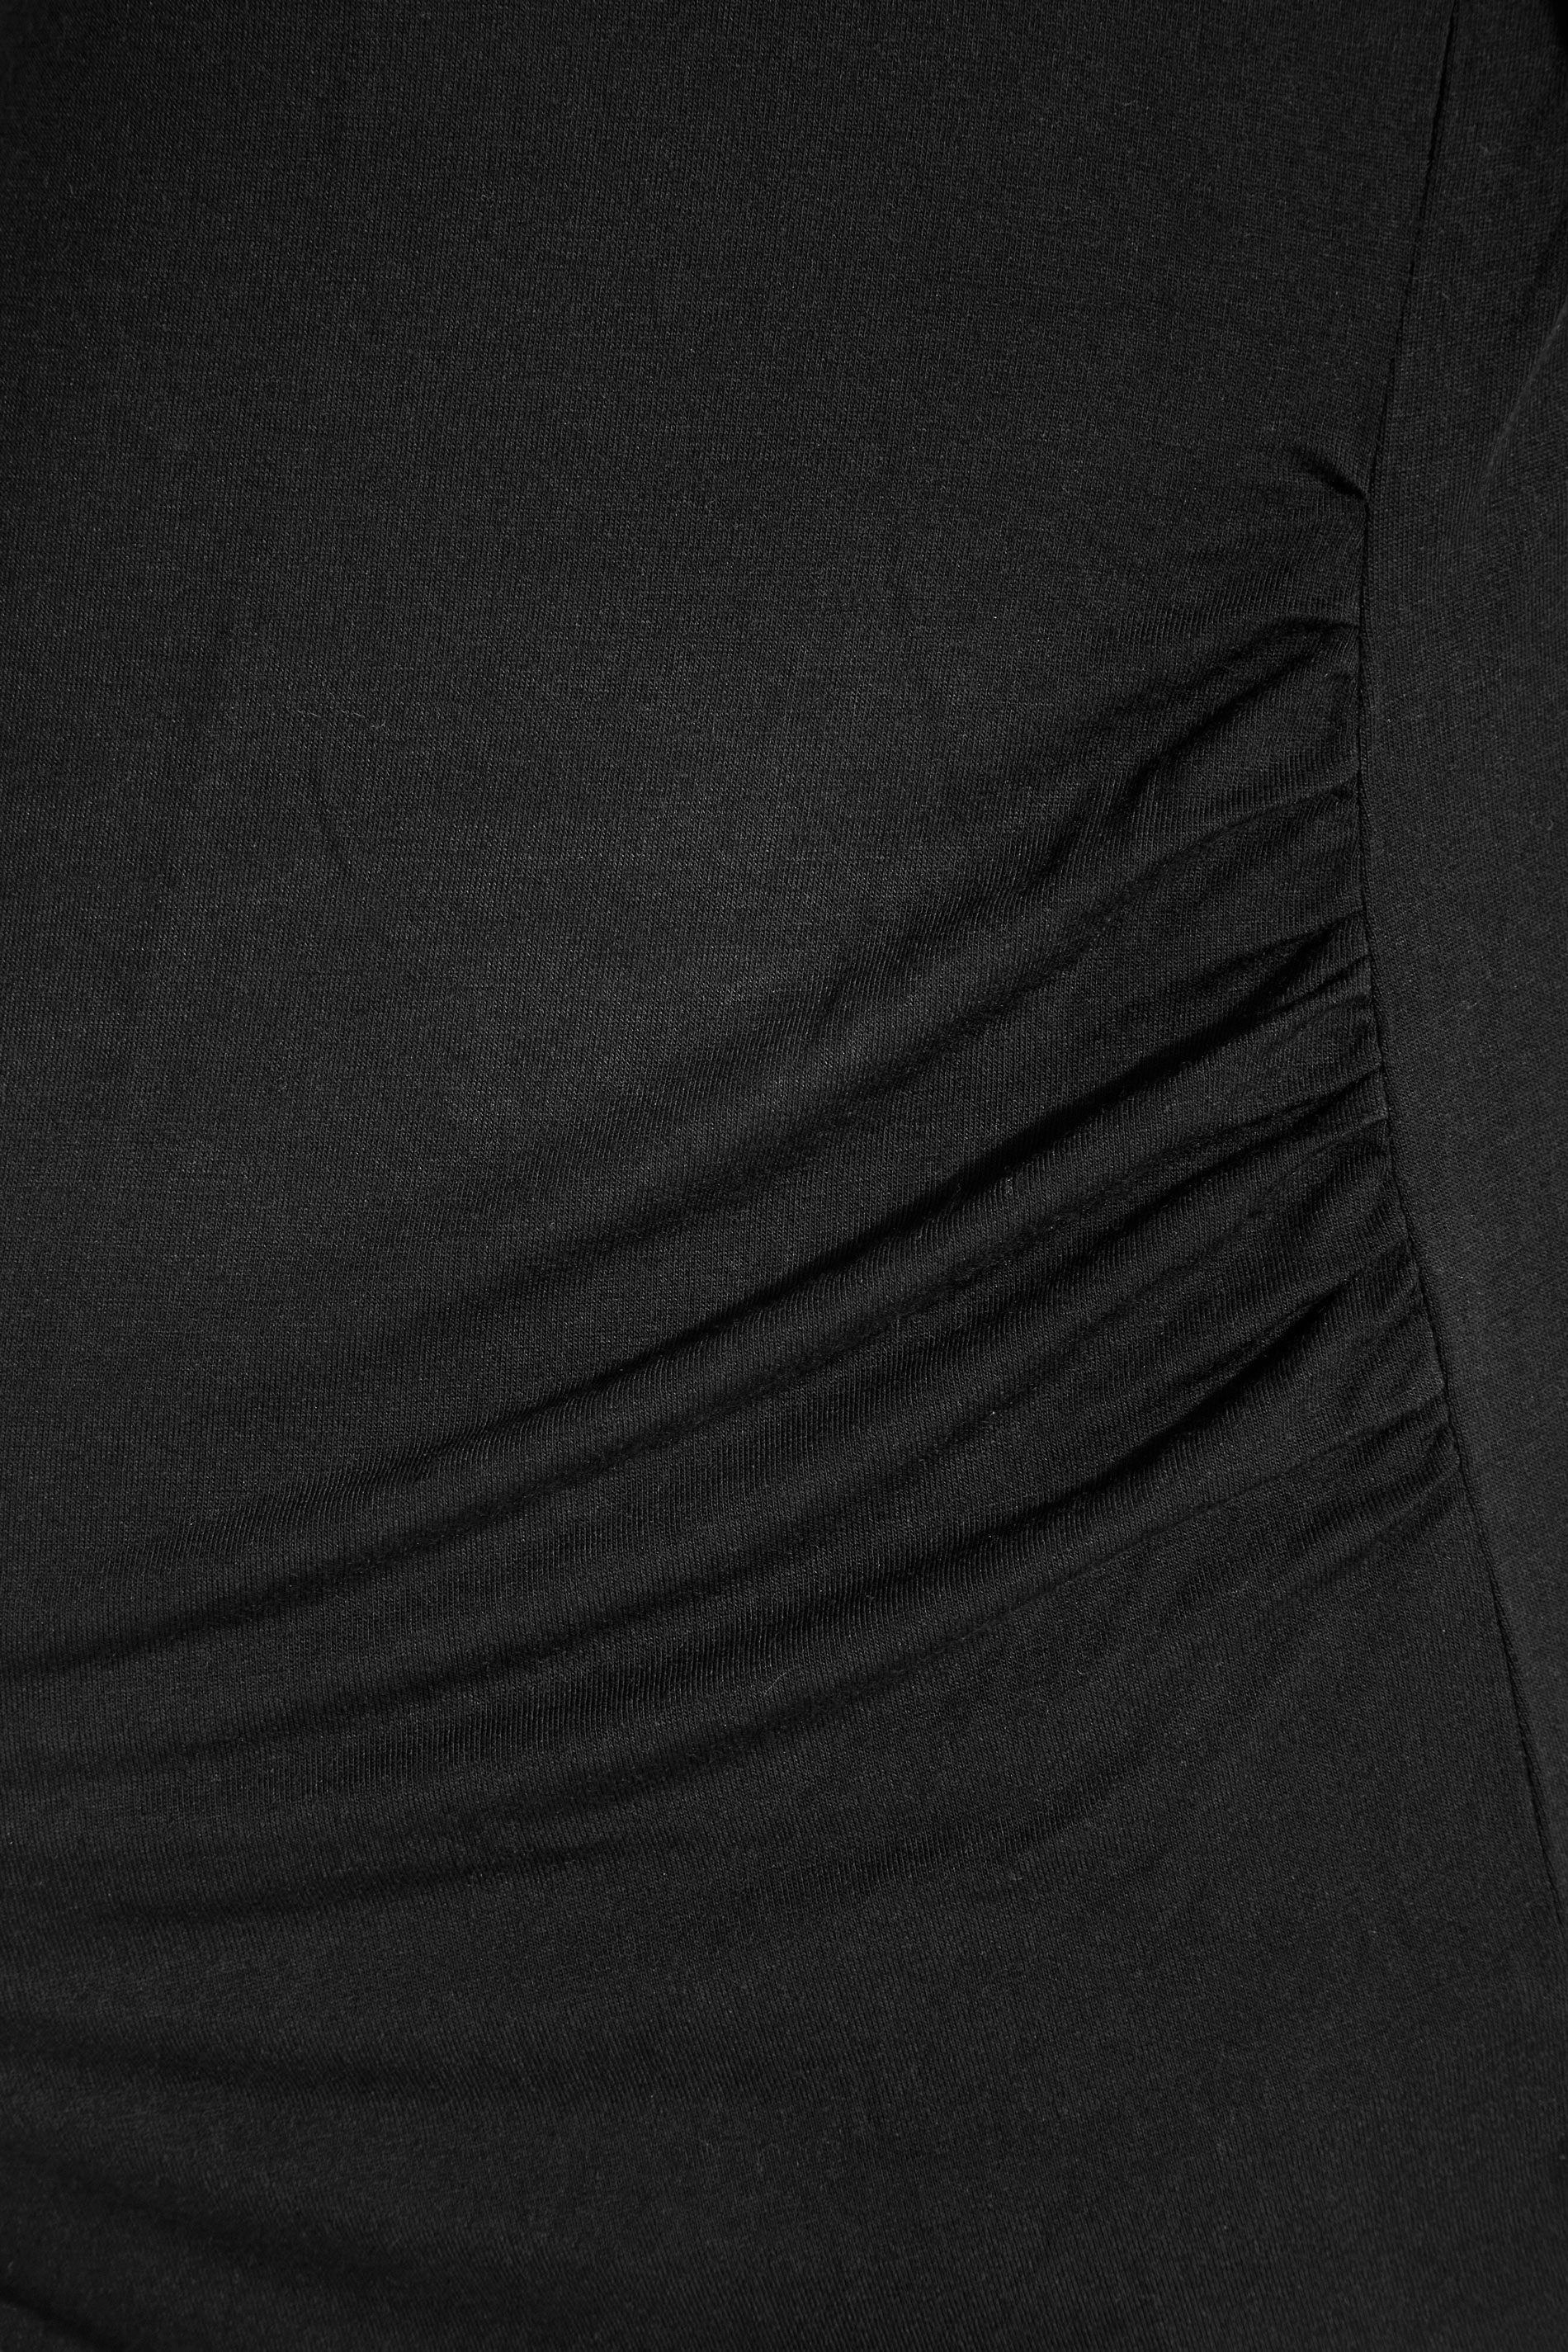 Grande taille  Vêtements de Grossesse Grande taille  Tops et t-shirts de grossesse | BUMP IT UP MATERNITY - T-Shirt Noir en Jersey - QA52675